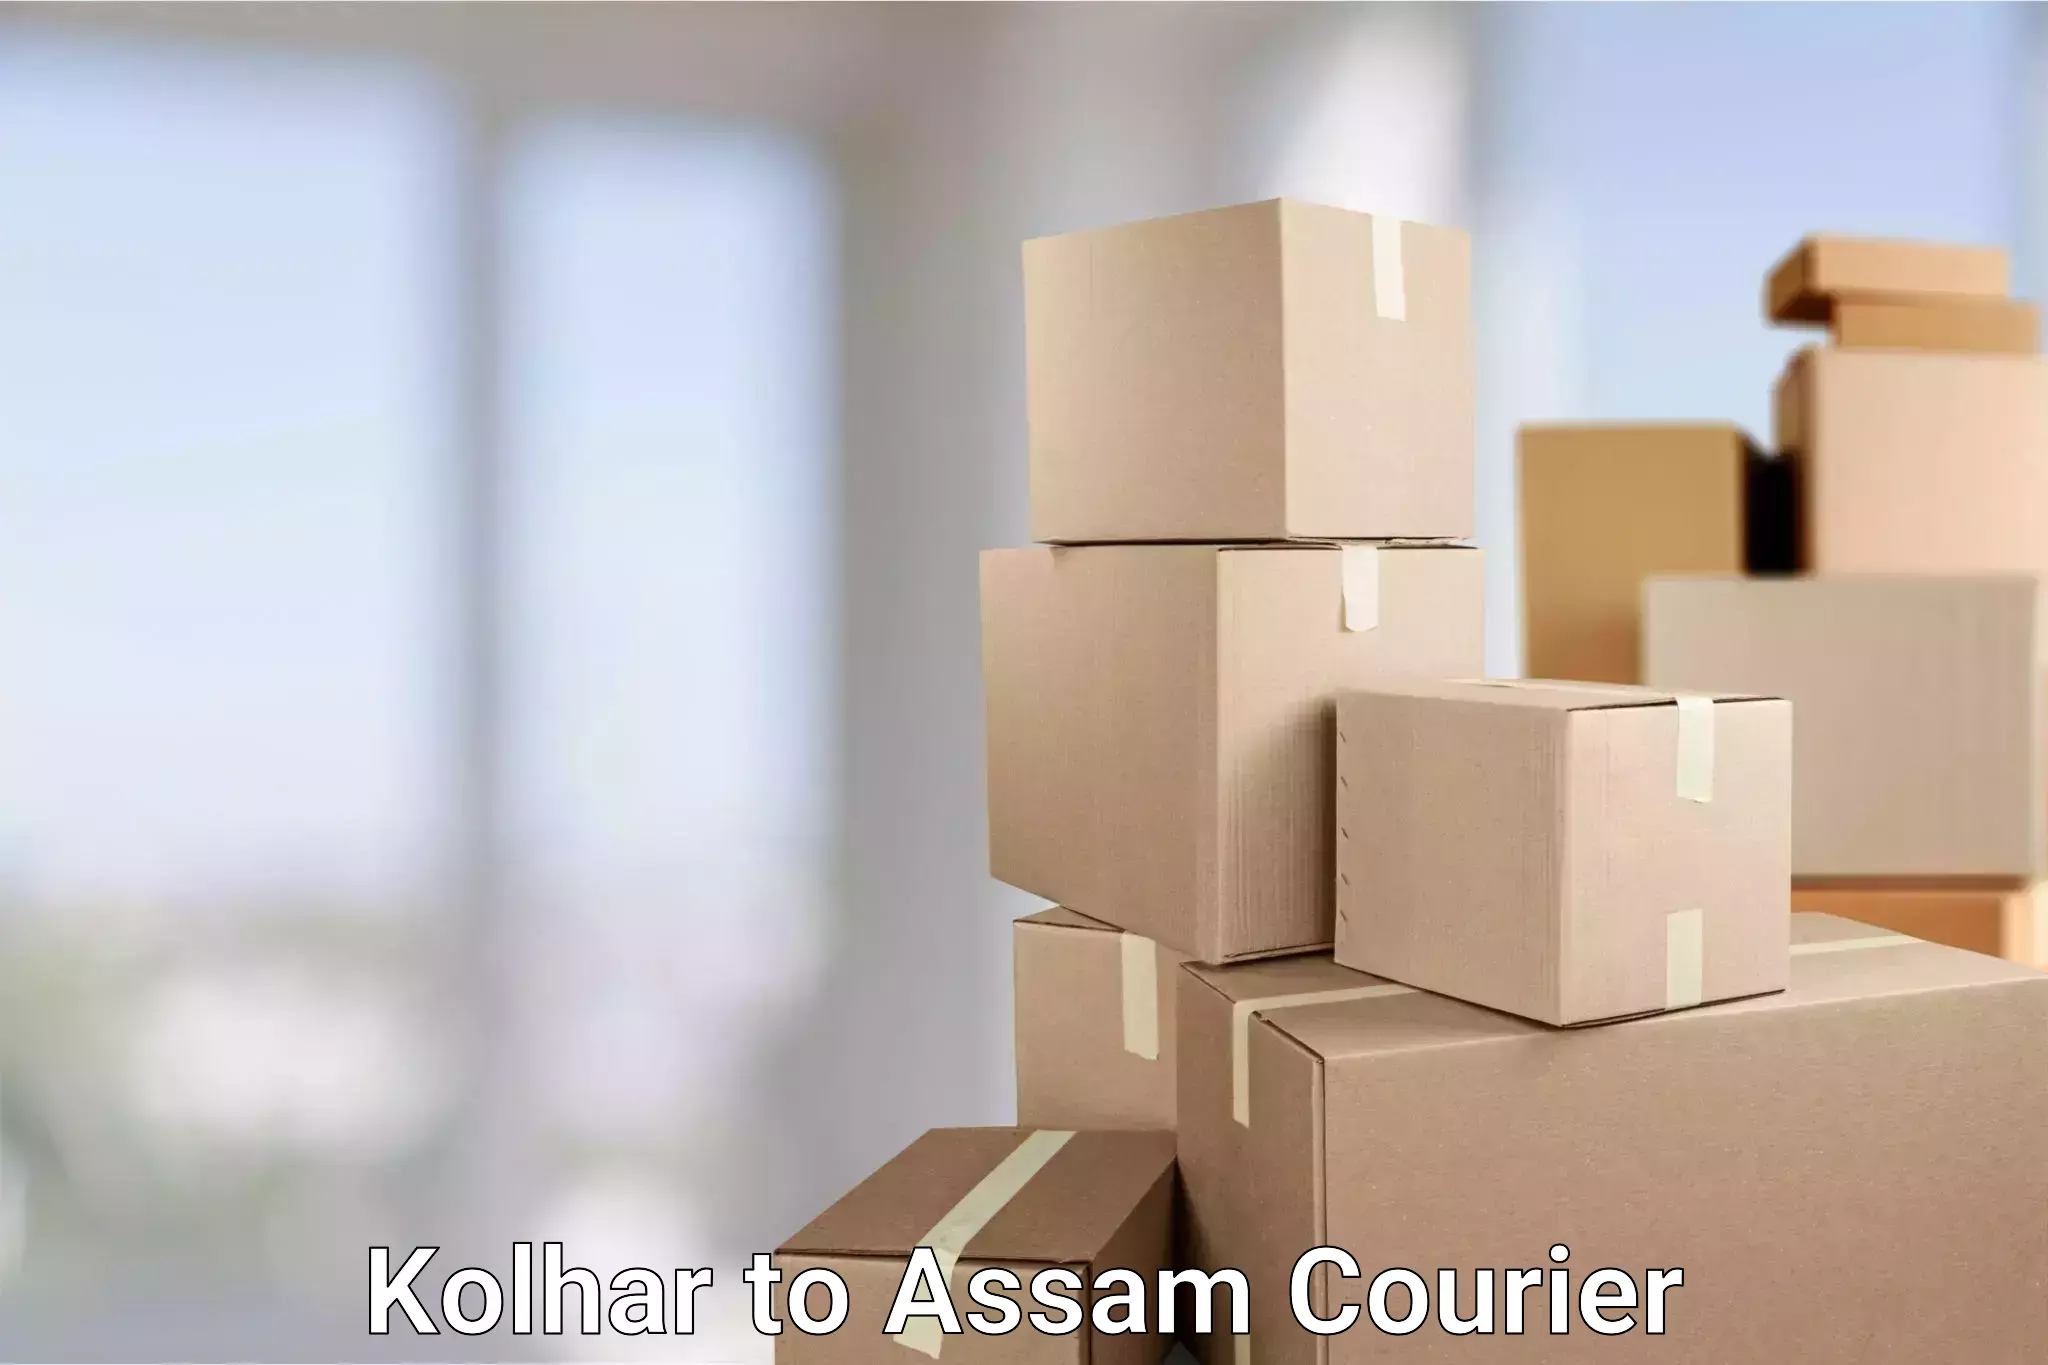 Automated parcel services Kolhar to Assam